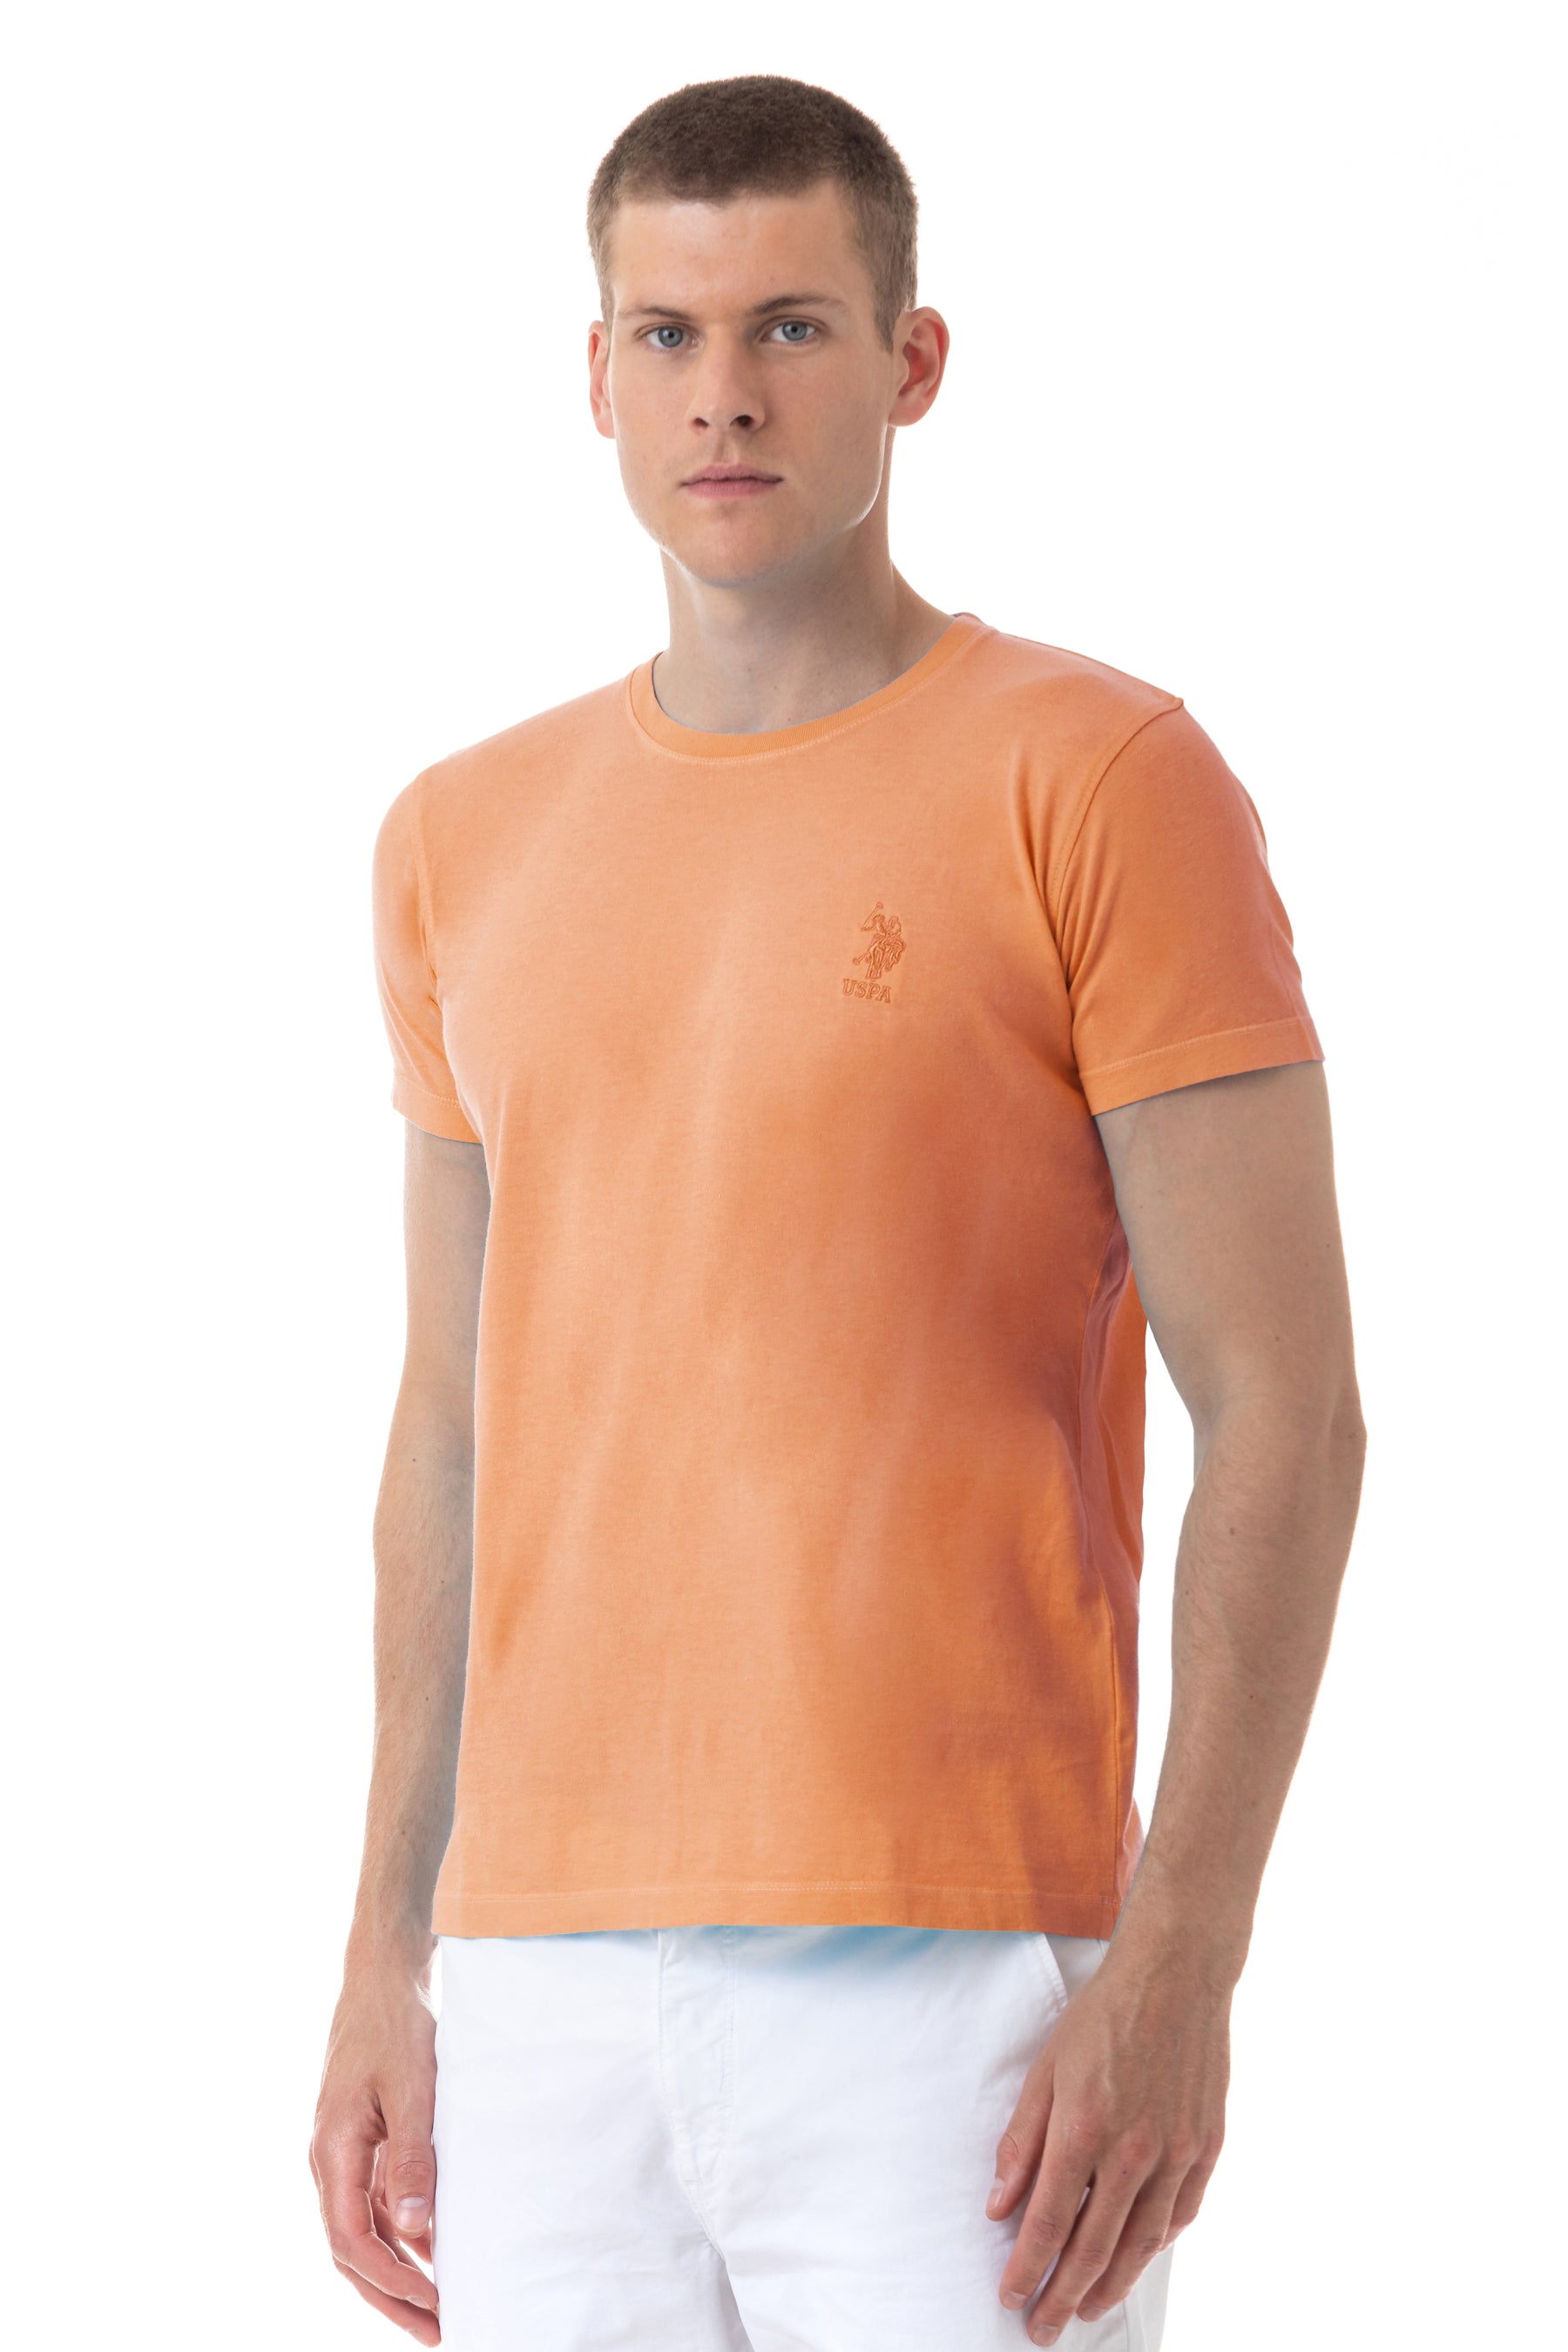 T-shirt a maniche corte fluo  U.S. Polo Assn.